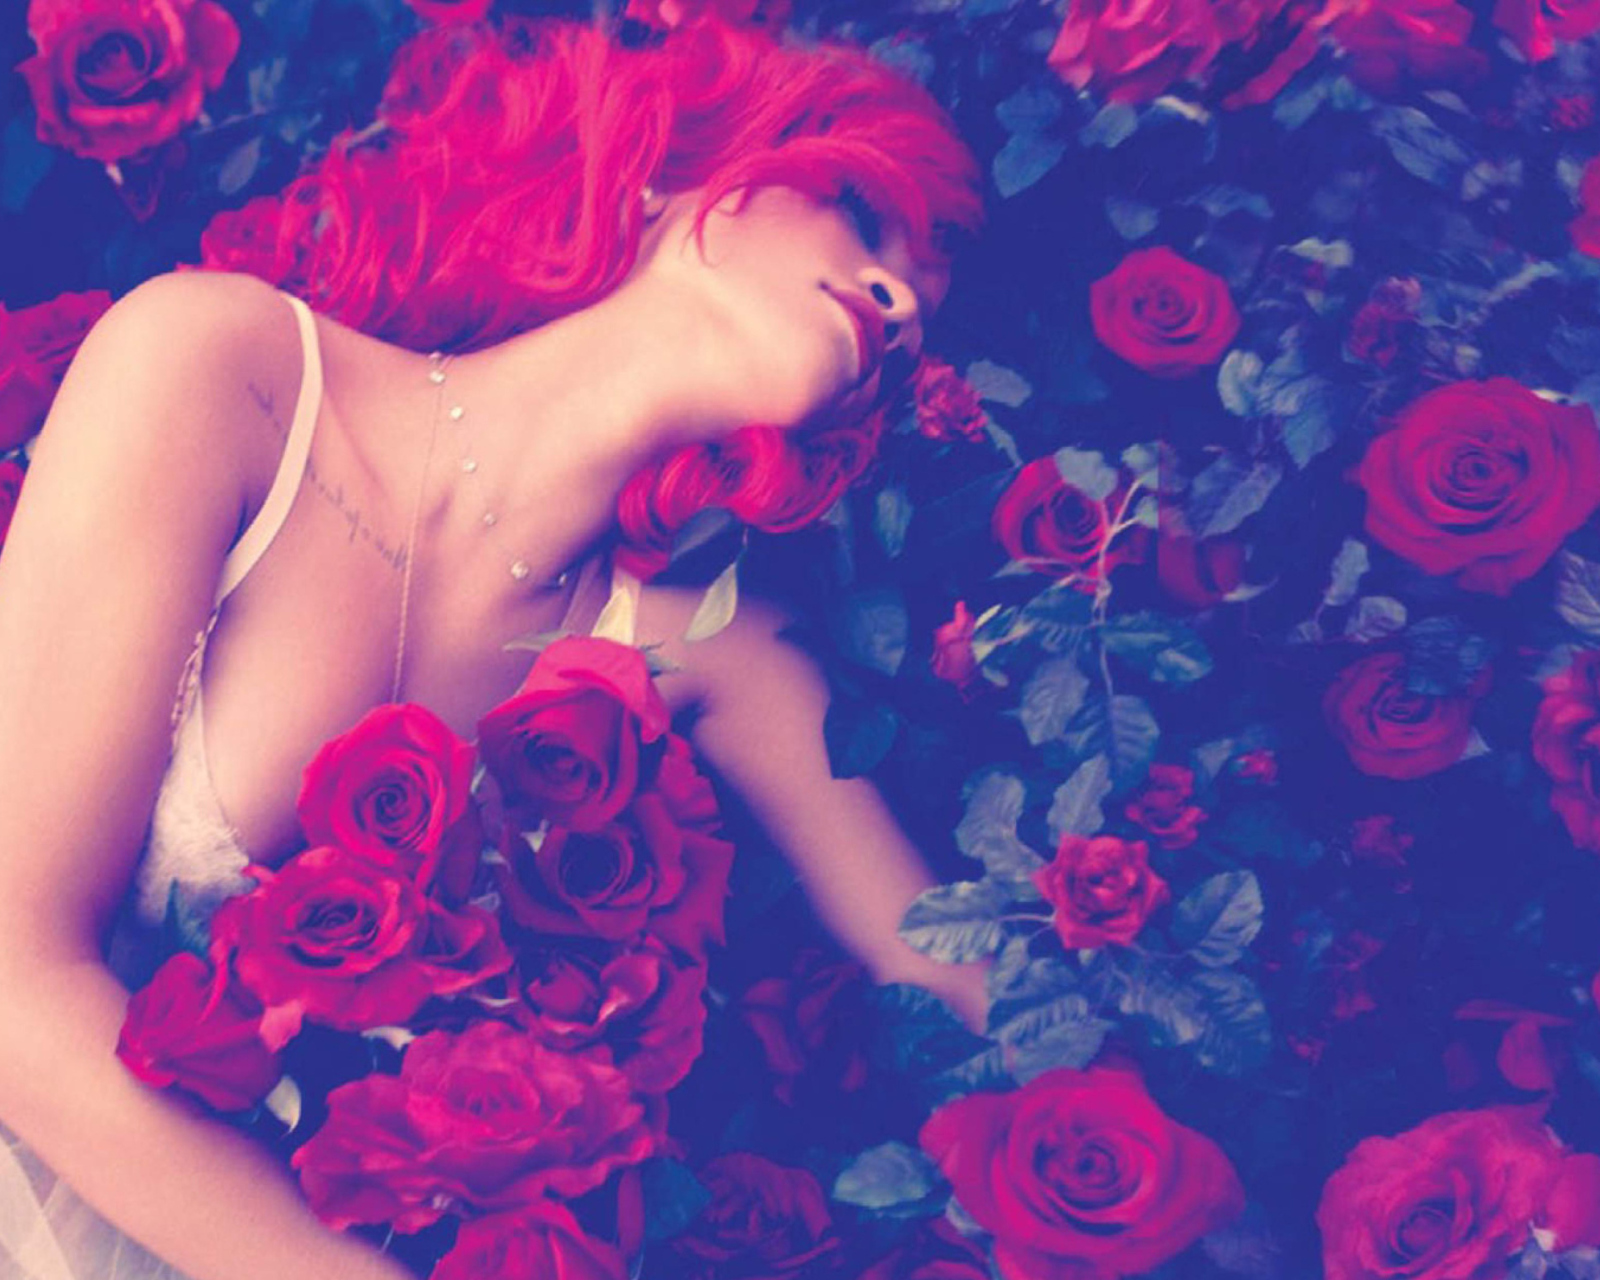 Rihanna's Roses screenshot #1 1600x1280